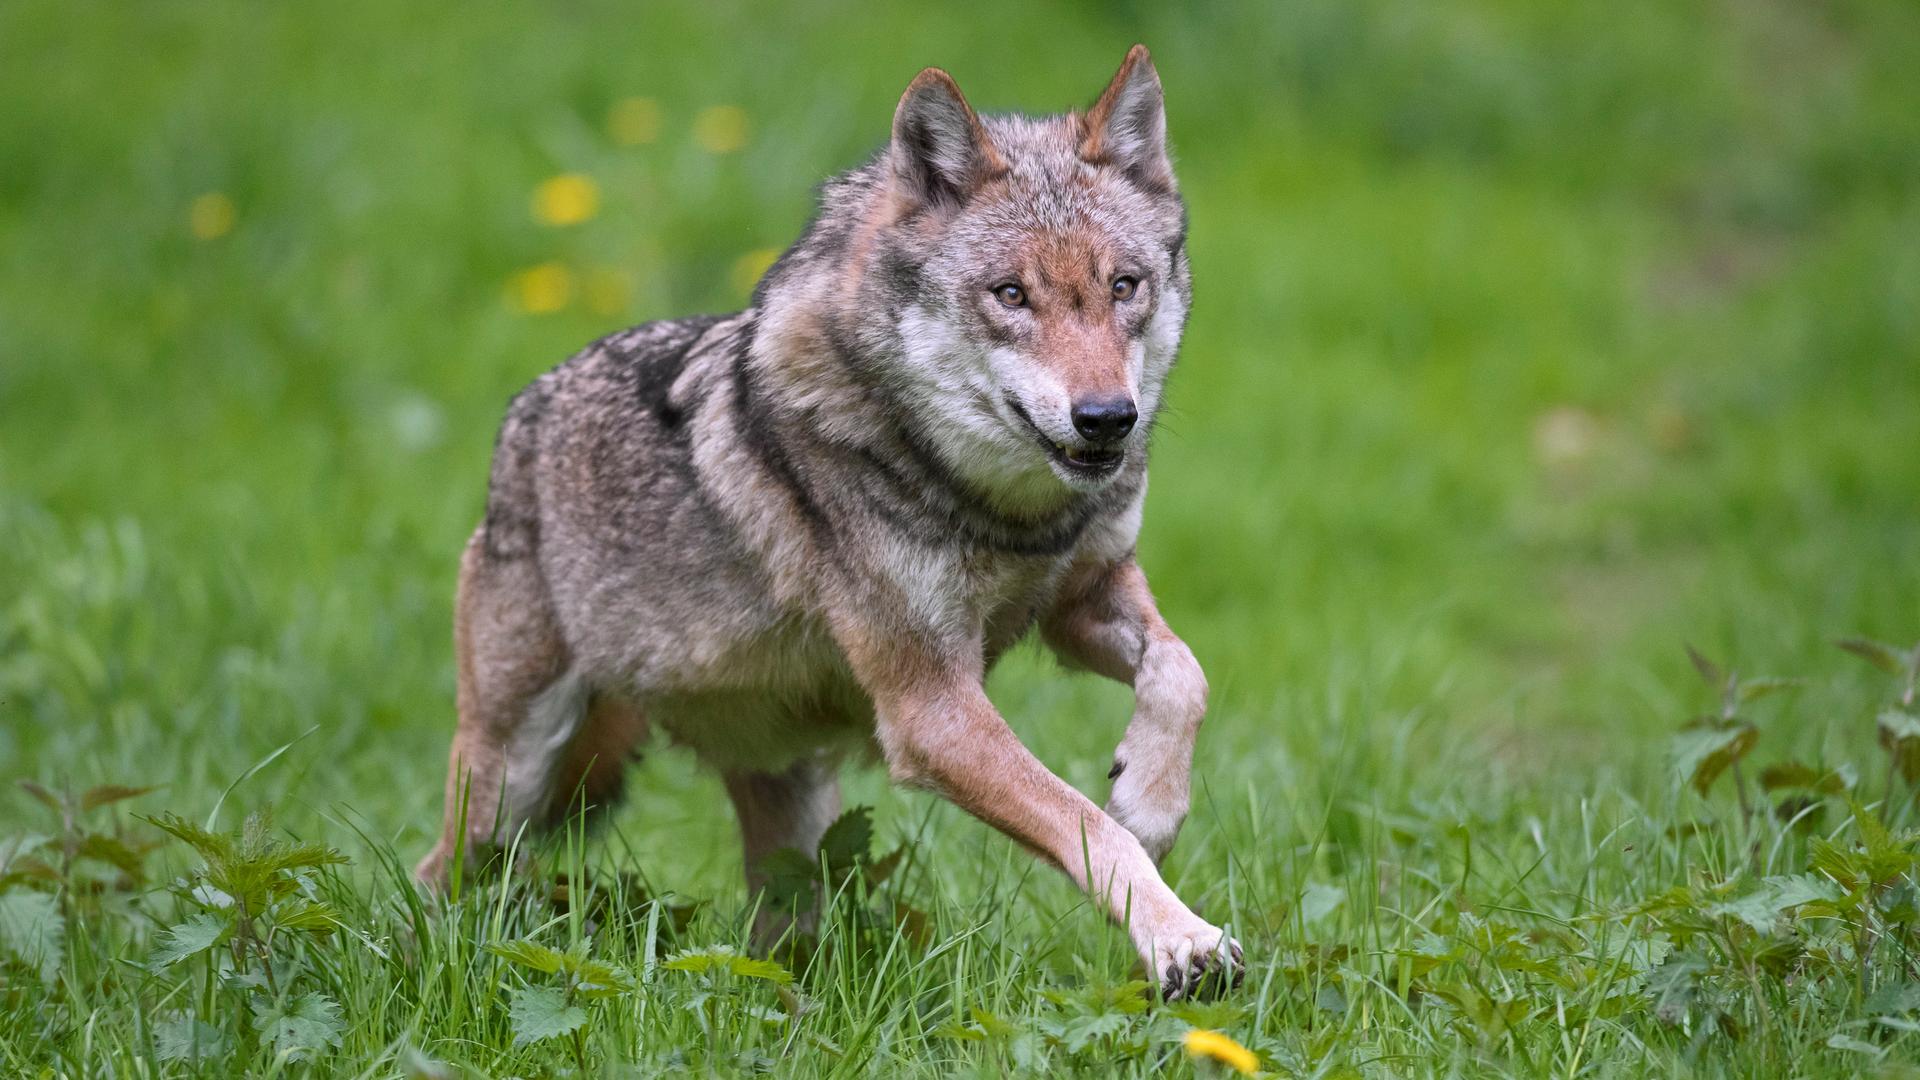 Ein einzelner europäischer grauer Wolf (Canis lupus) läuft durch grünes Gras.